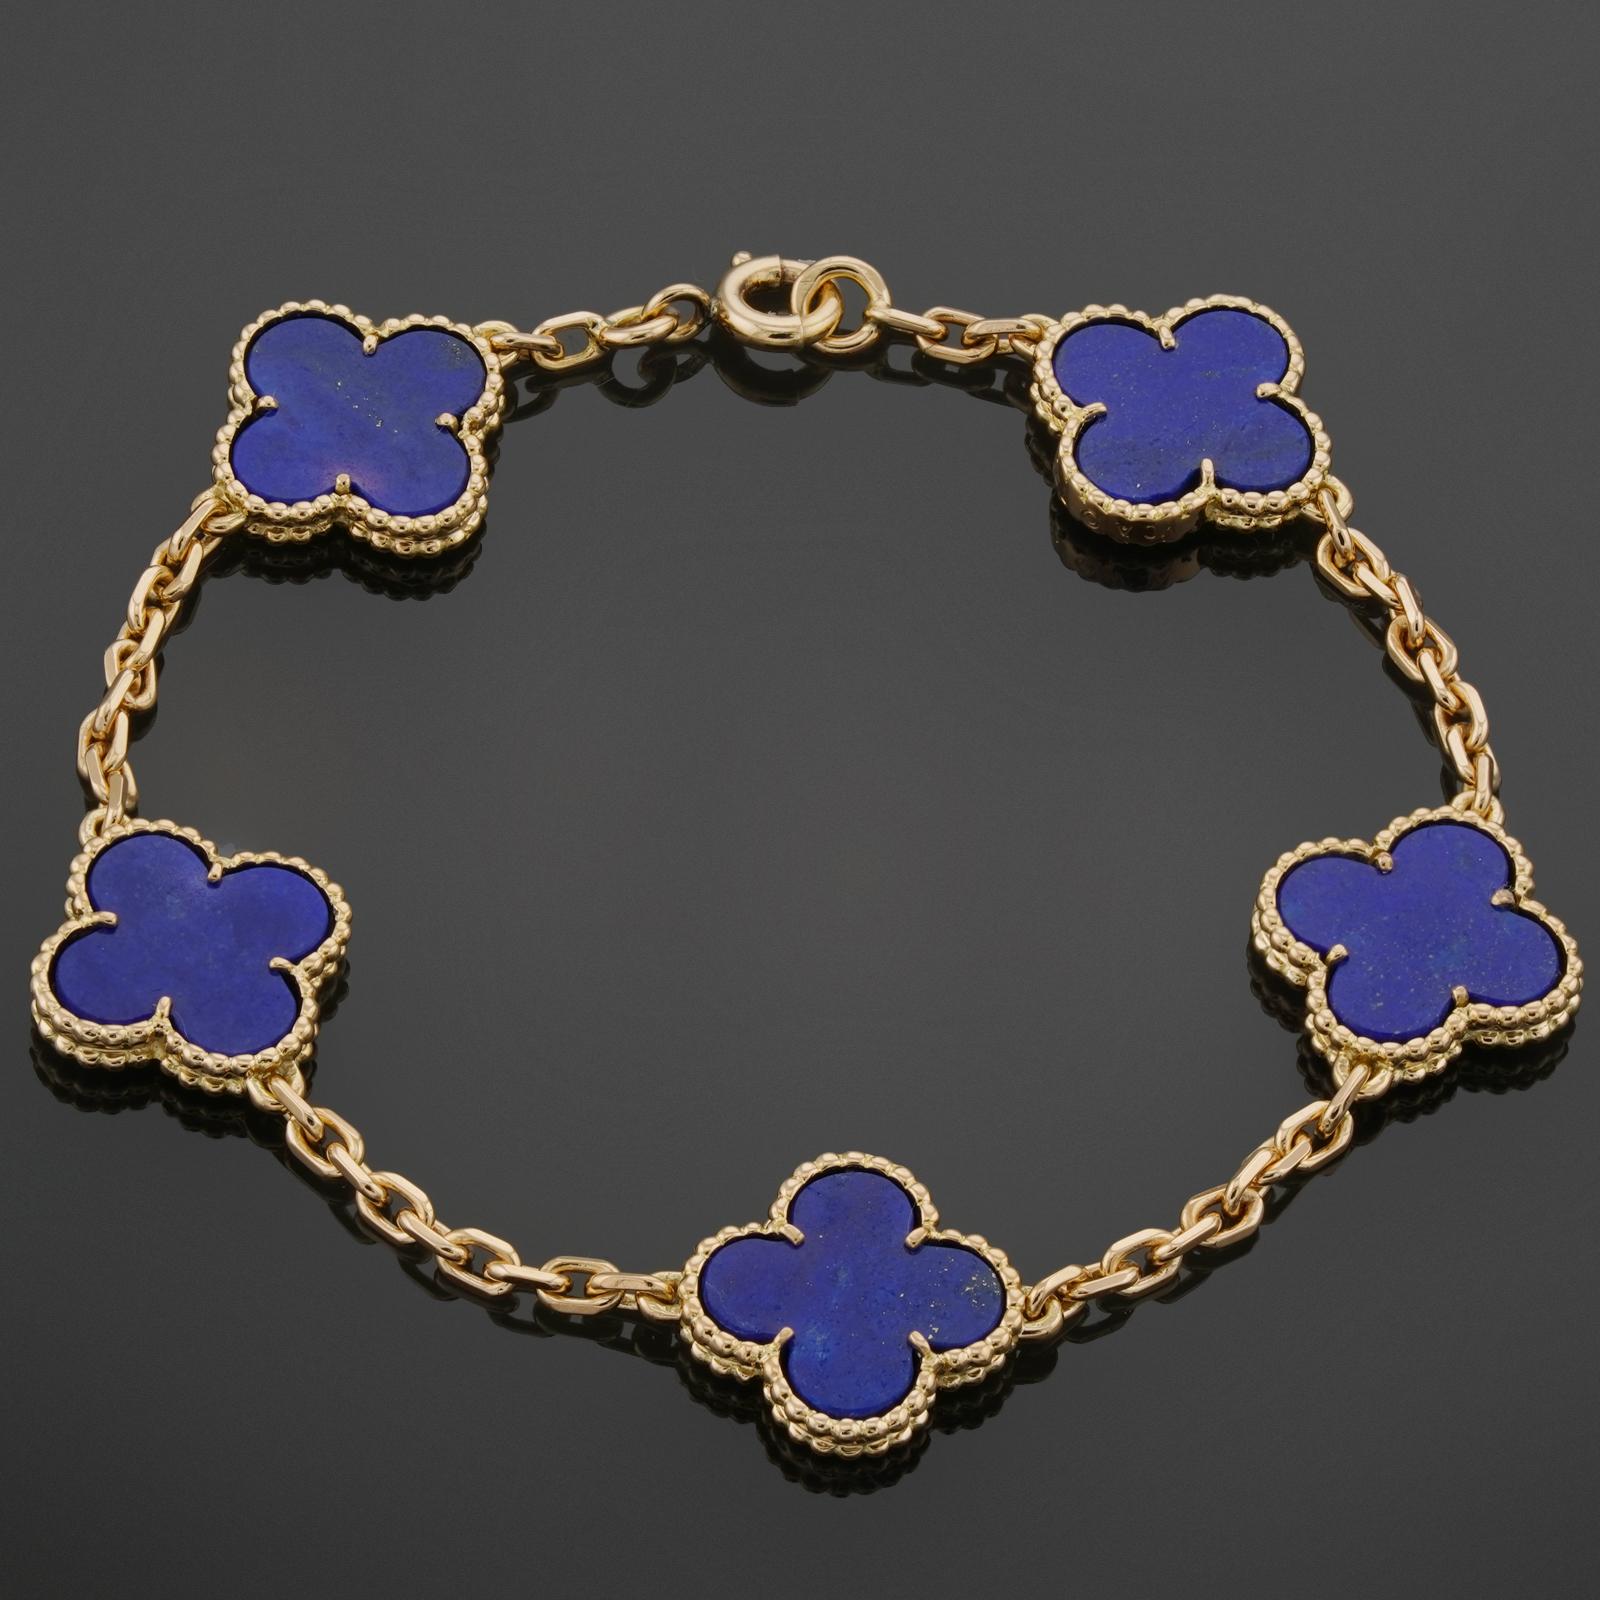 Dieses seltene Armband von Van Cleef & Arpels aus der klassischen Collection'S Vintage Alhambra ist aus 18 Karat Gelbgold gefertigt und zeigt 5 Glücksklee-Motive, die mit blauem Lapizlazuli in runden Perlenfassungen eingelegt sind. Hergestellt in